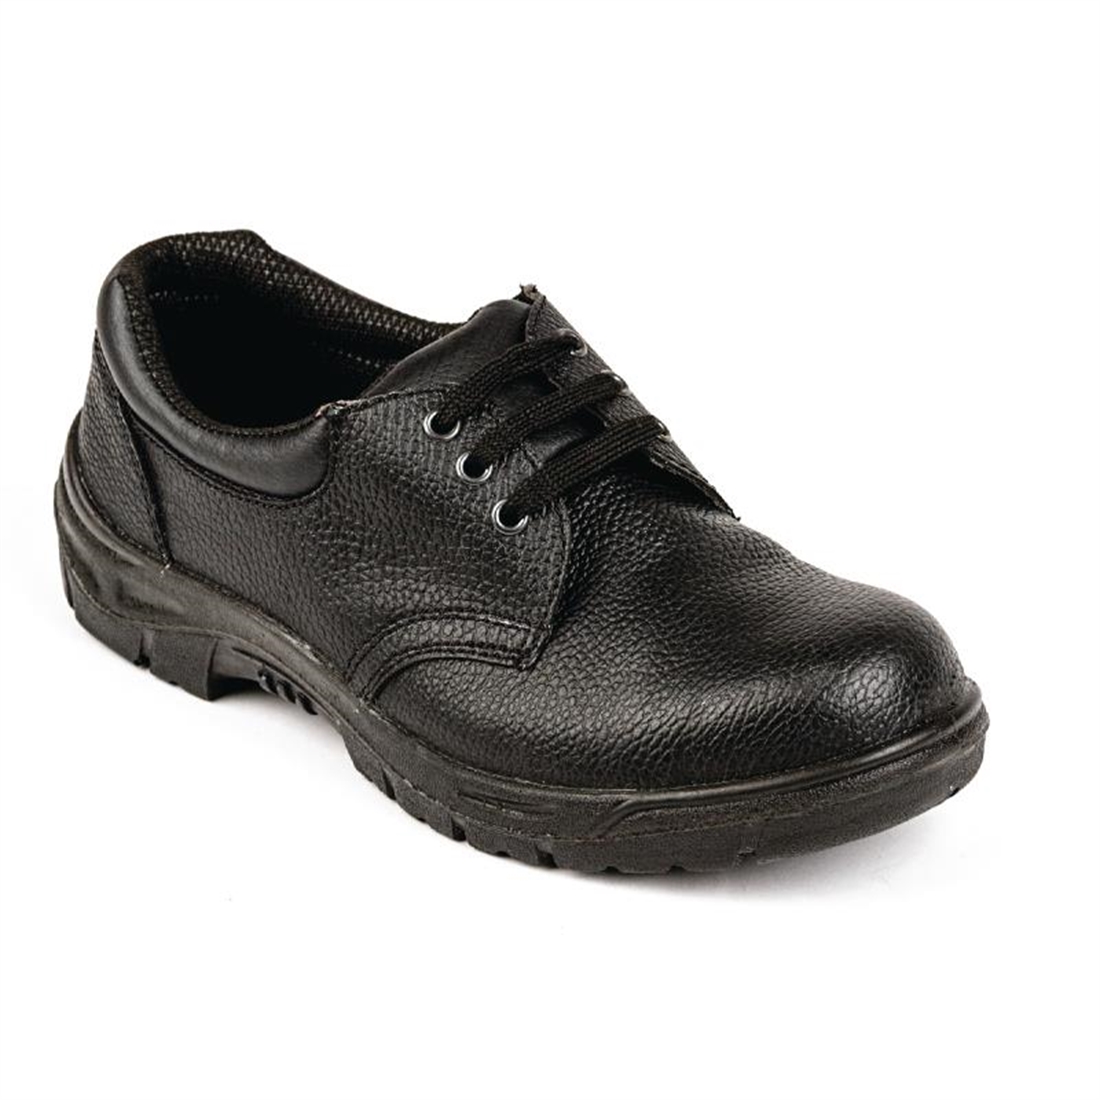 Slipbuster Unisex Safety Shoe Black 38